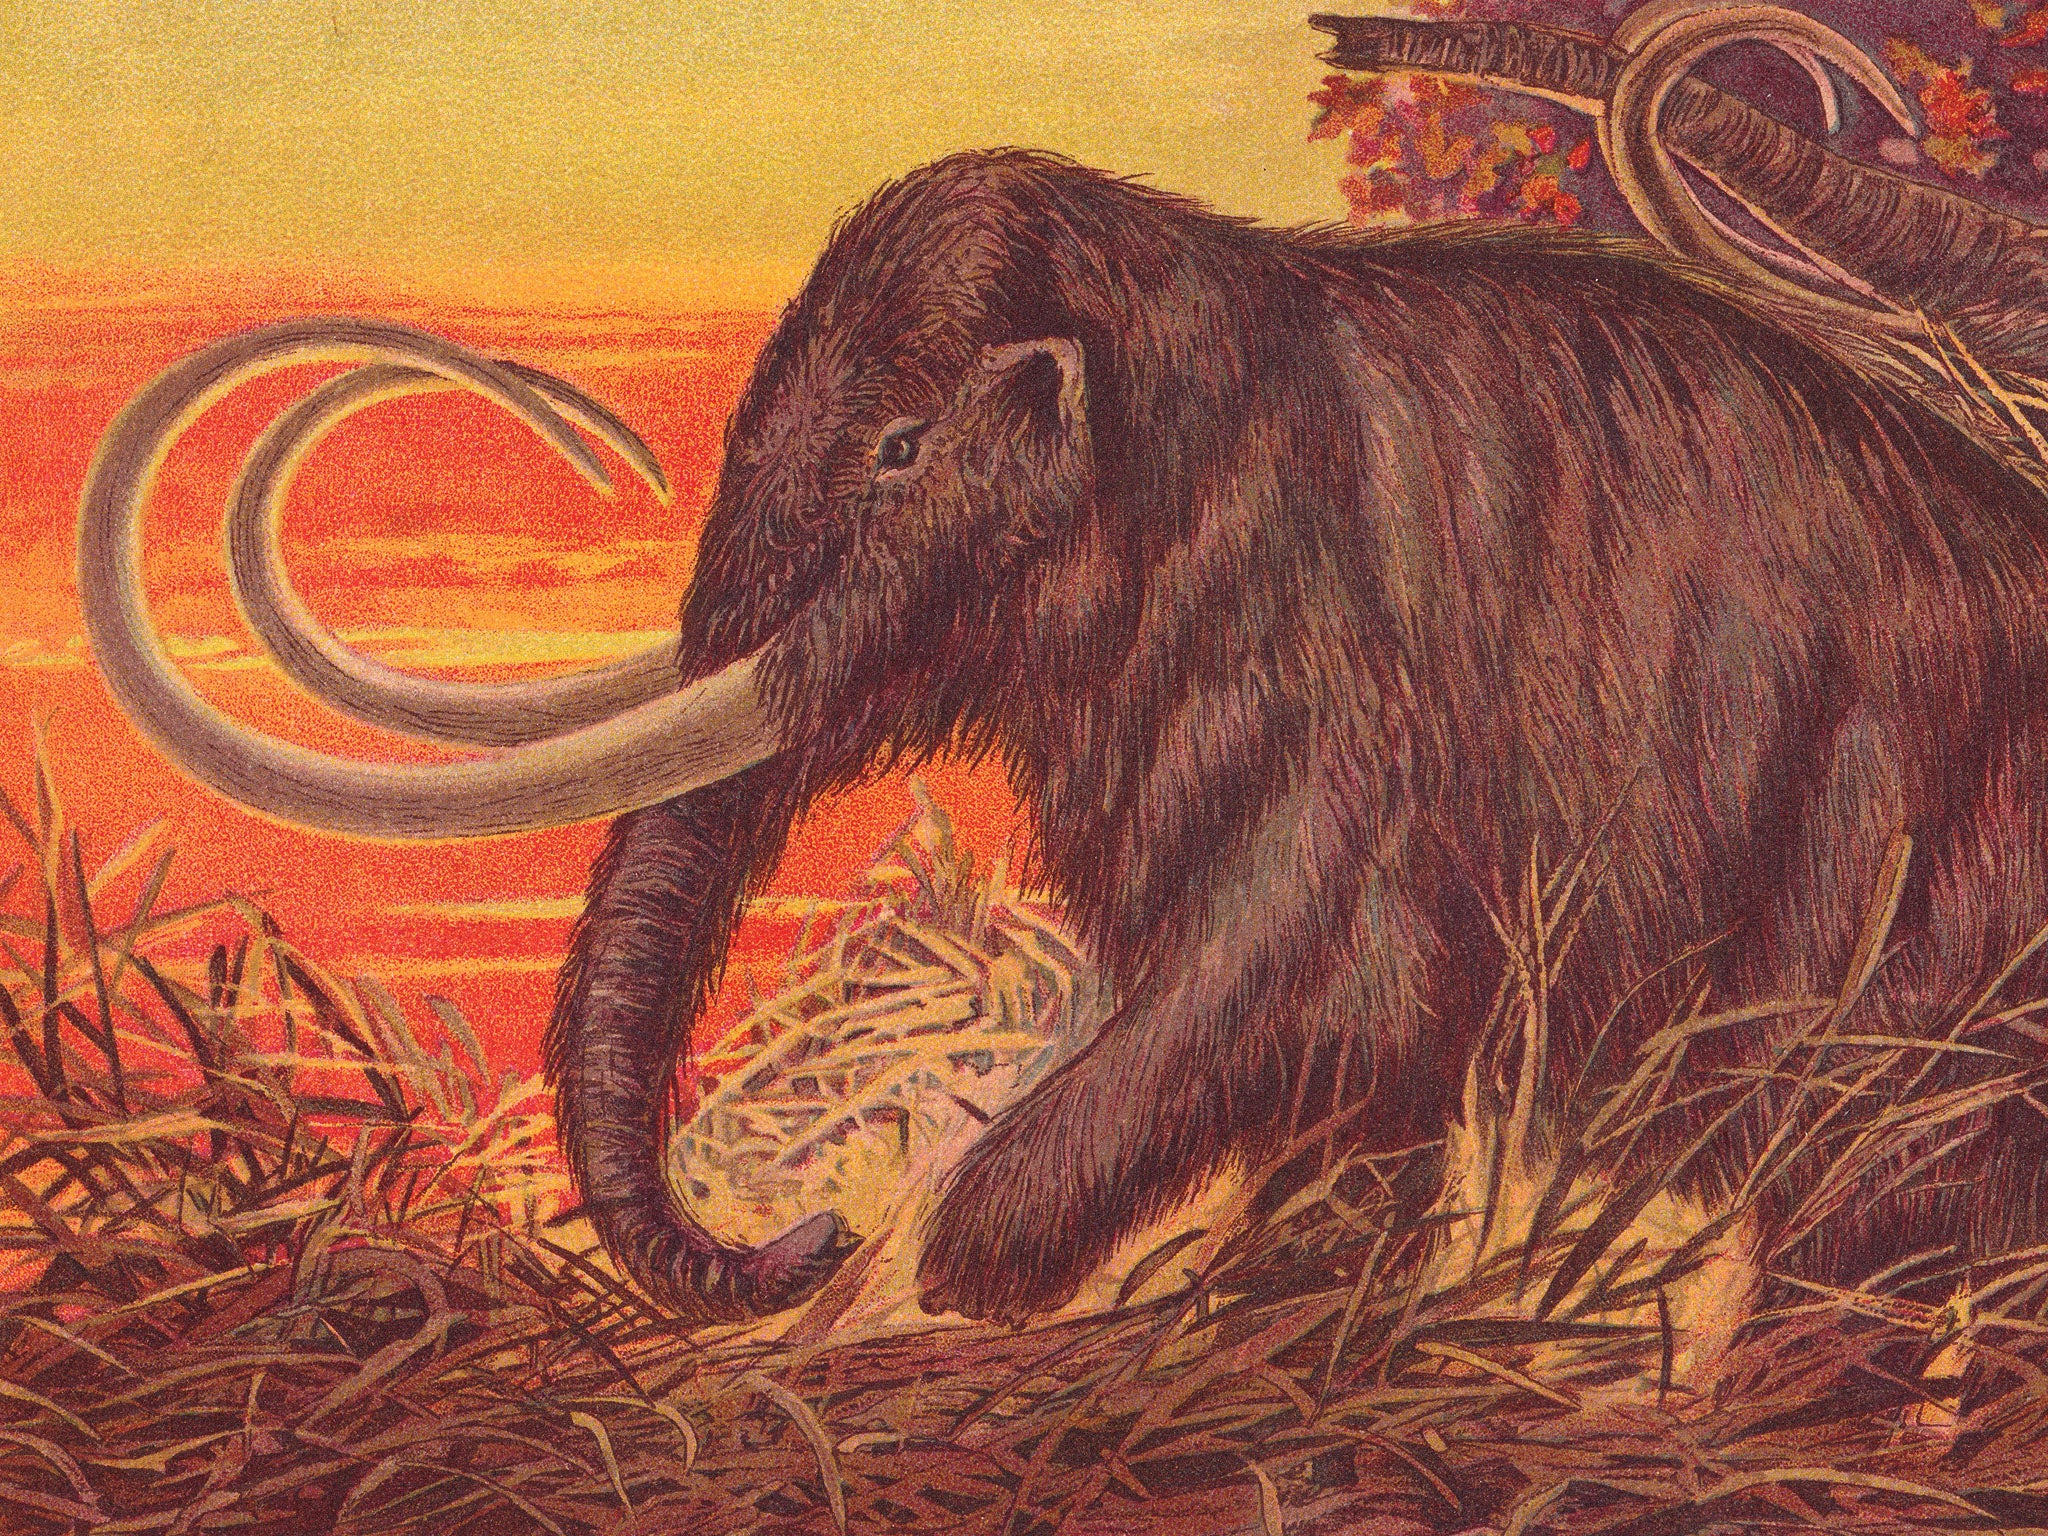 Una ilustración de 1900 del mamut lanudo, que podría llegar a los supermercados en las próximas décadas